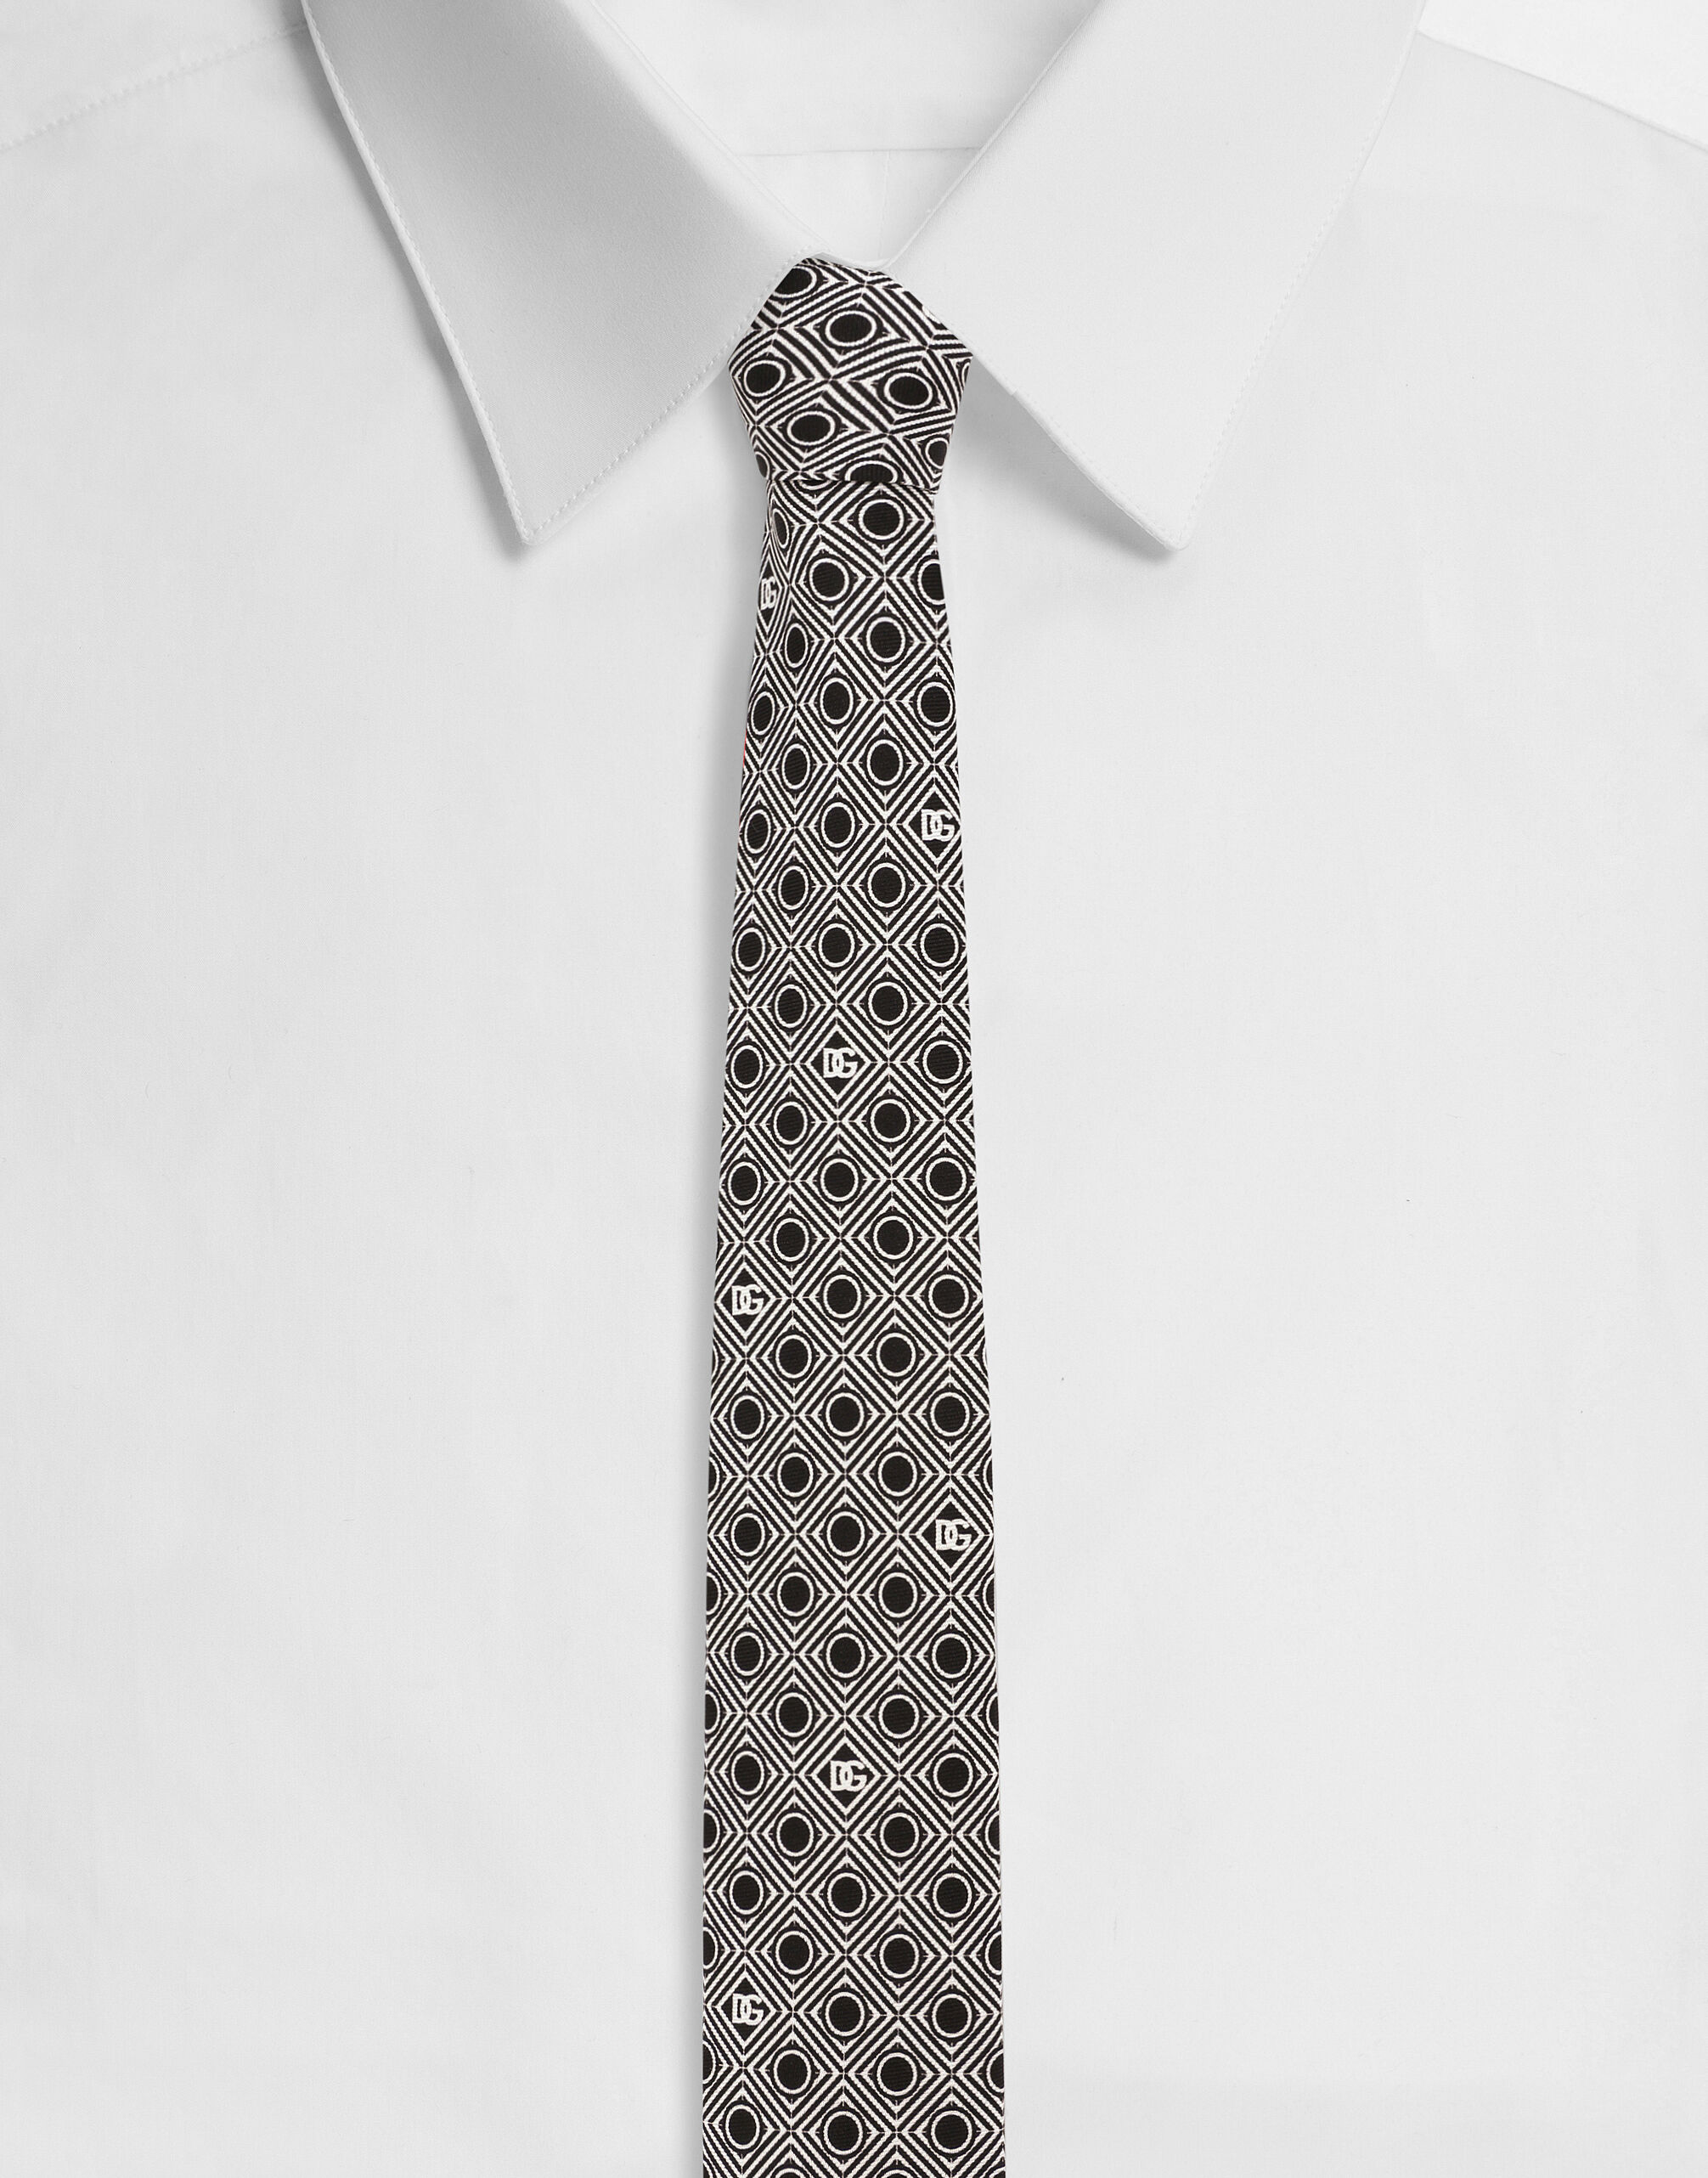 ${brand} Cravatta in seta stampa microdisegni logo DG ${colorDescription} ${masterID}